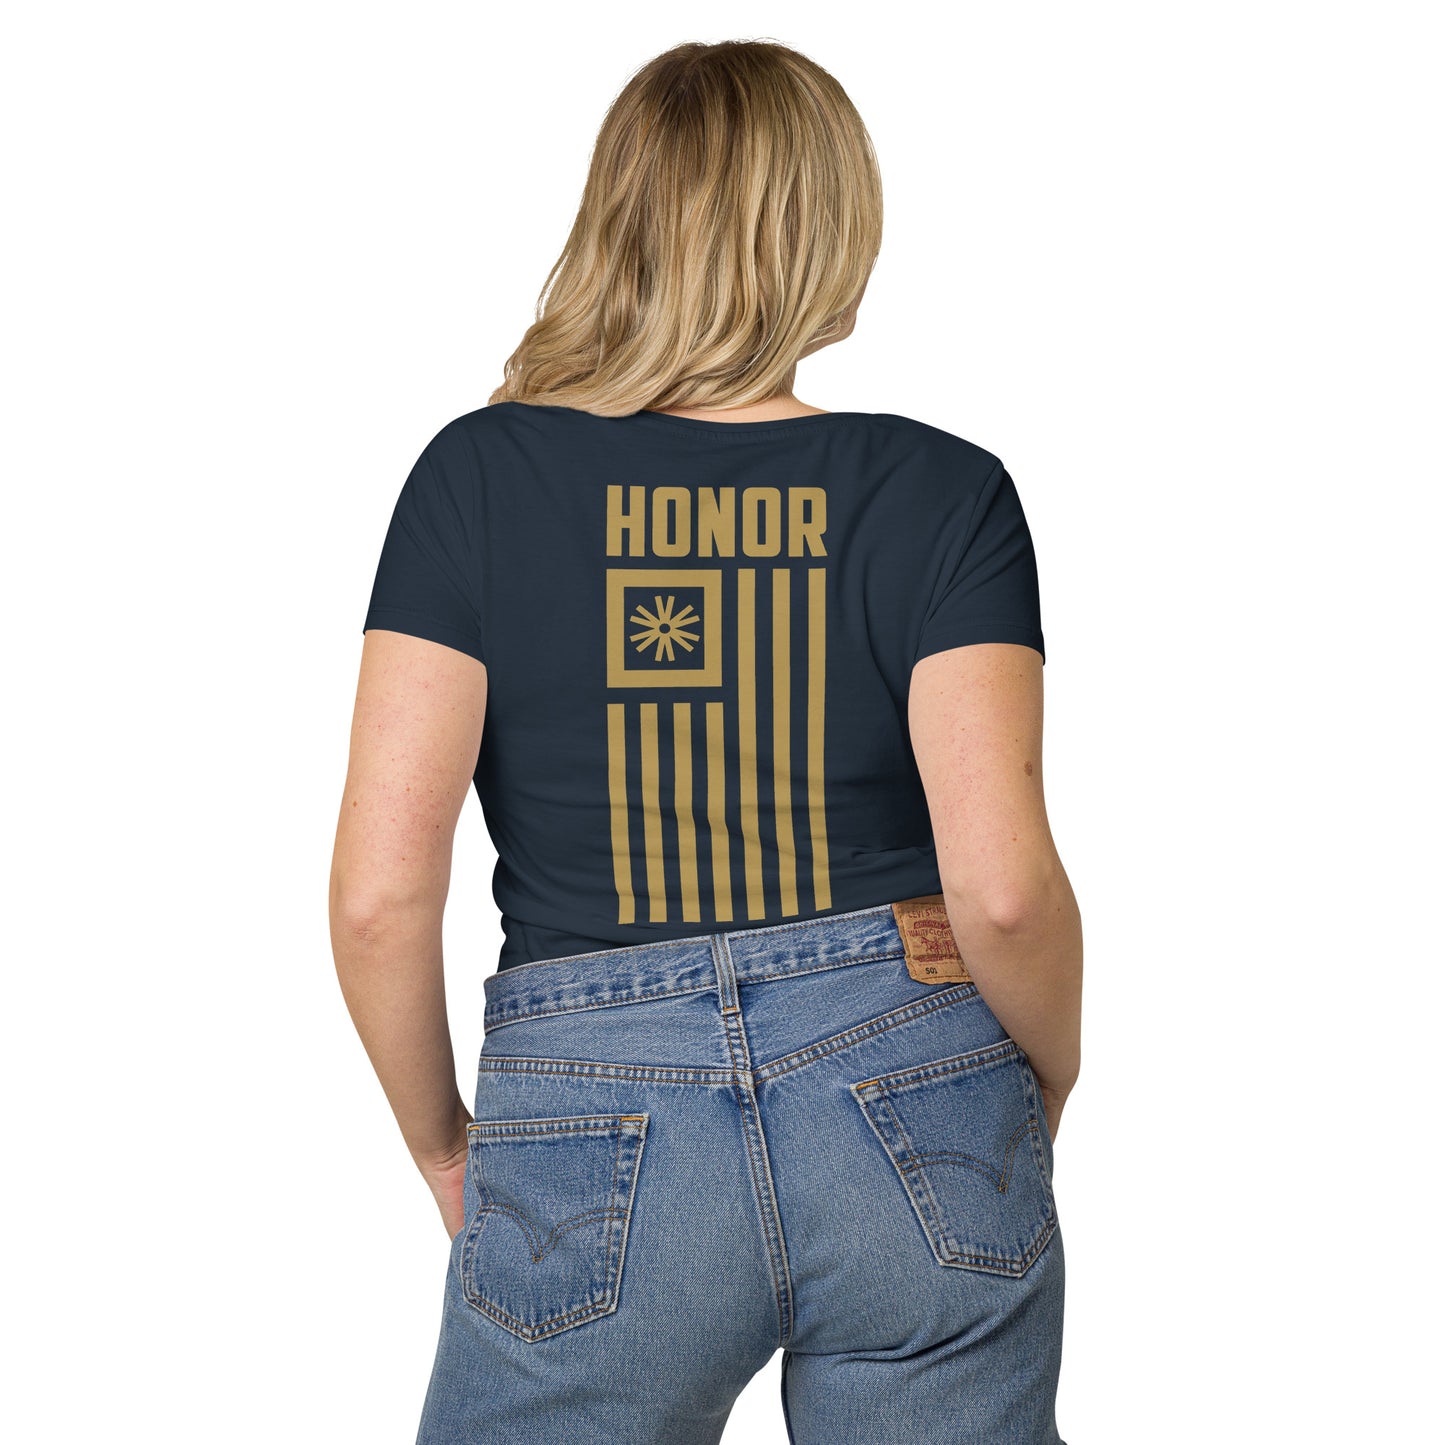 Honor Women’s basic organic t-shirt